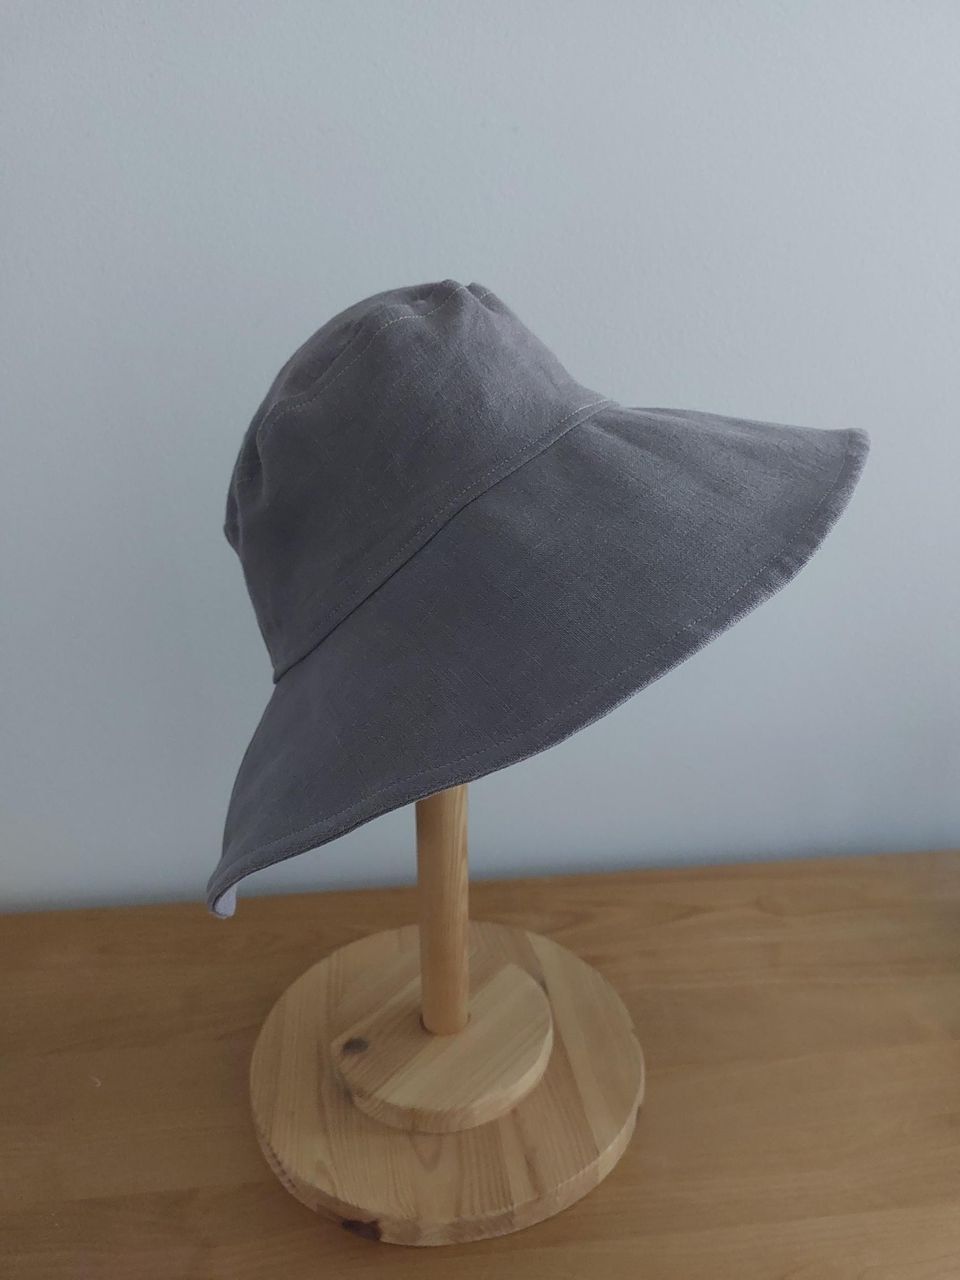 Pellava hattu kesähattu aurinkohattu